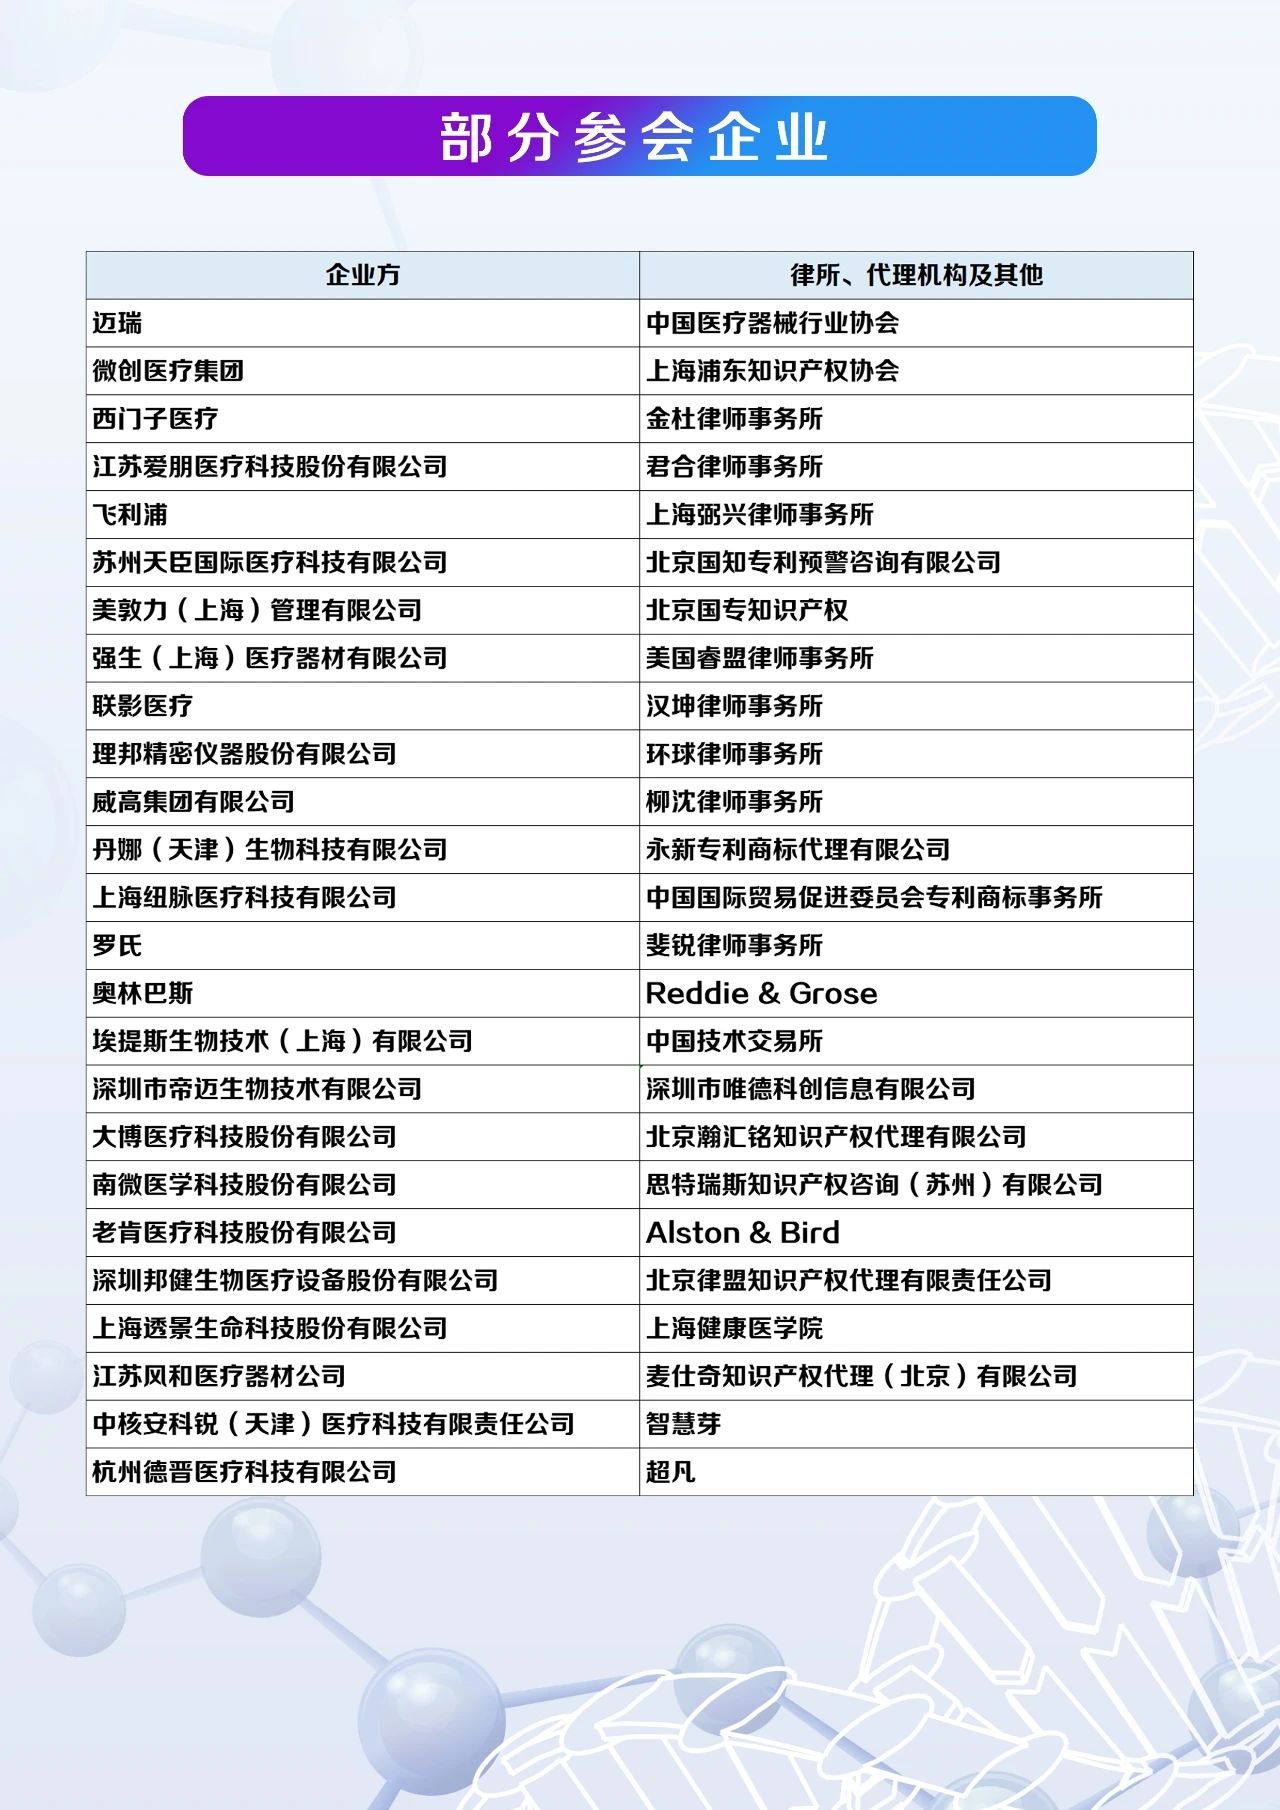 紧急通知：中国医疗器械知识产权峰会延期至7月23-24日举办